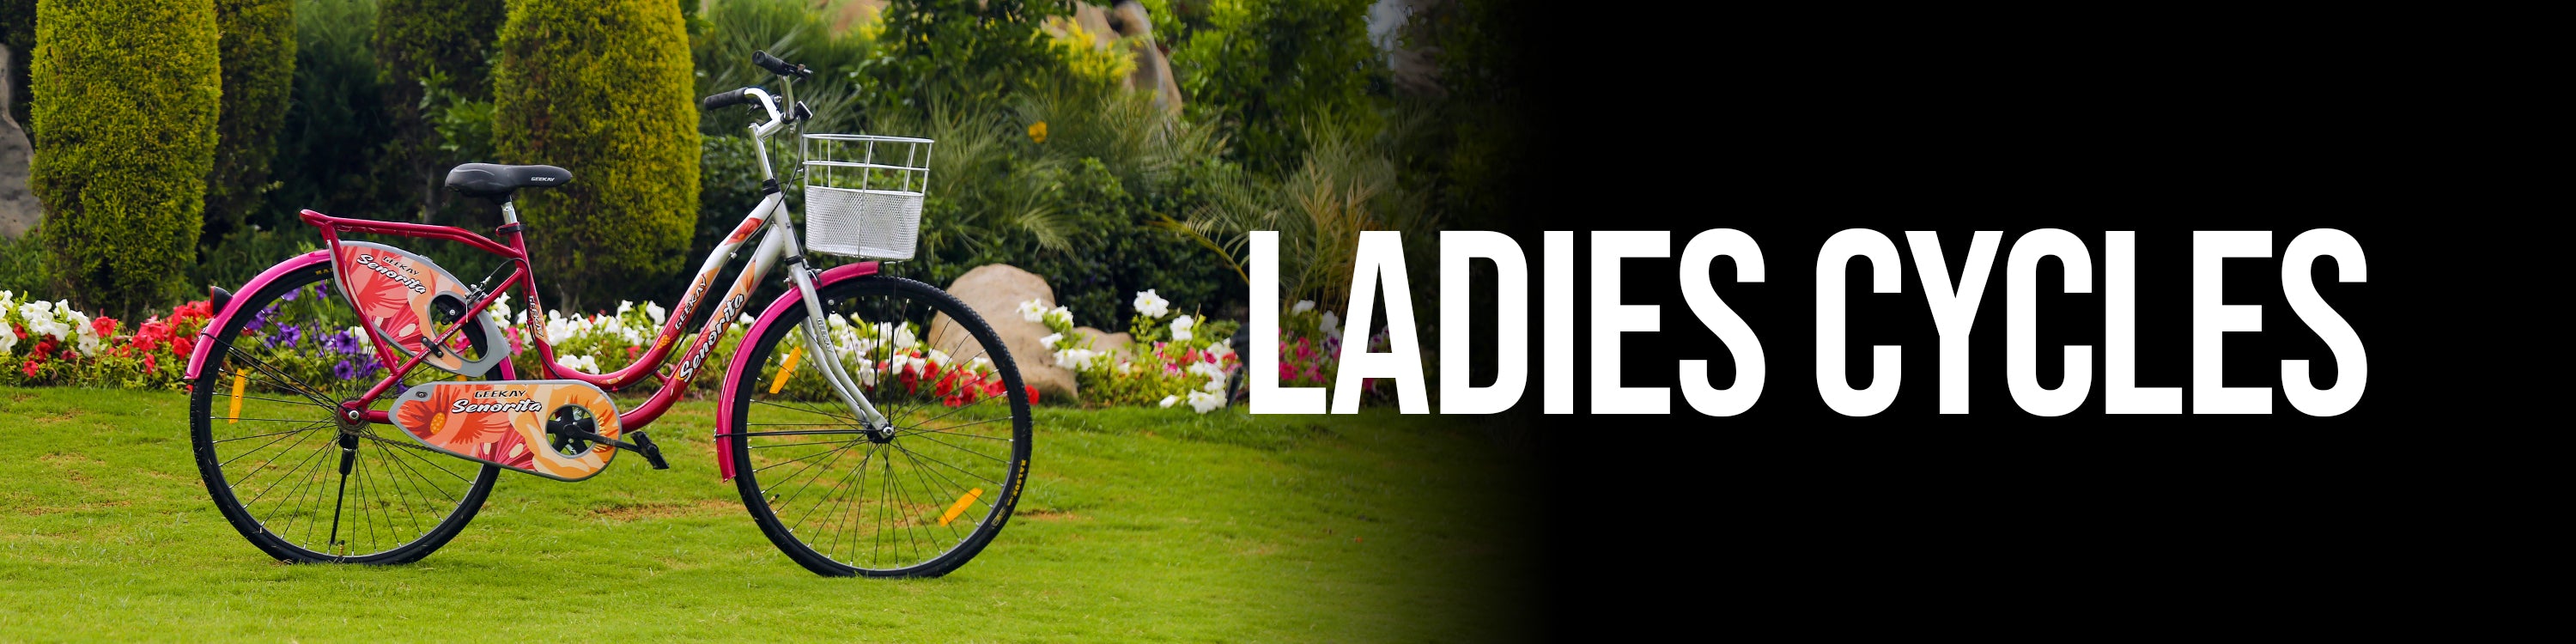 Buy Ladies Cycle Online at Best Price in India